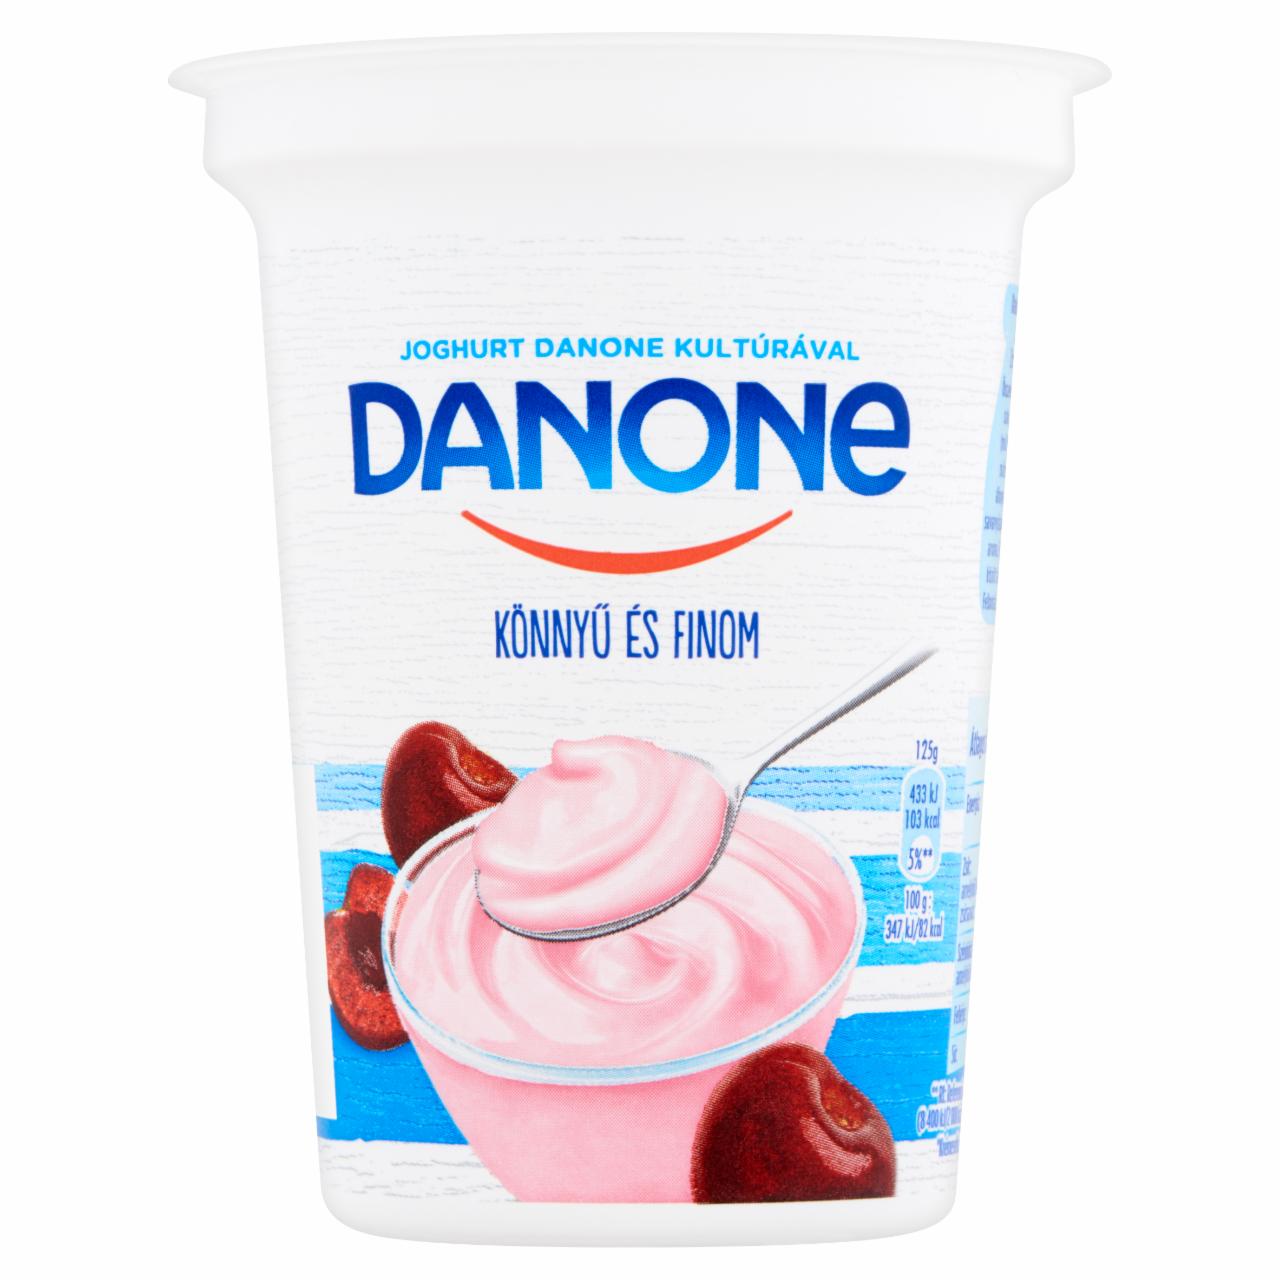 Képek - Danone meggyízű, élőflórás, zsírszegény joghurt 400 g